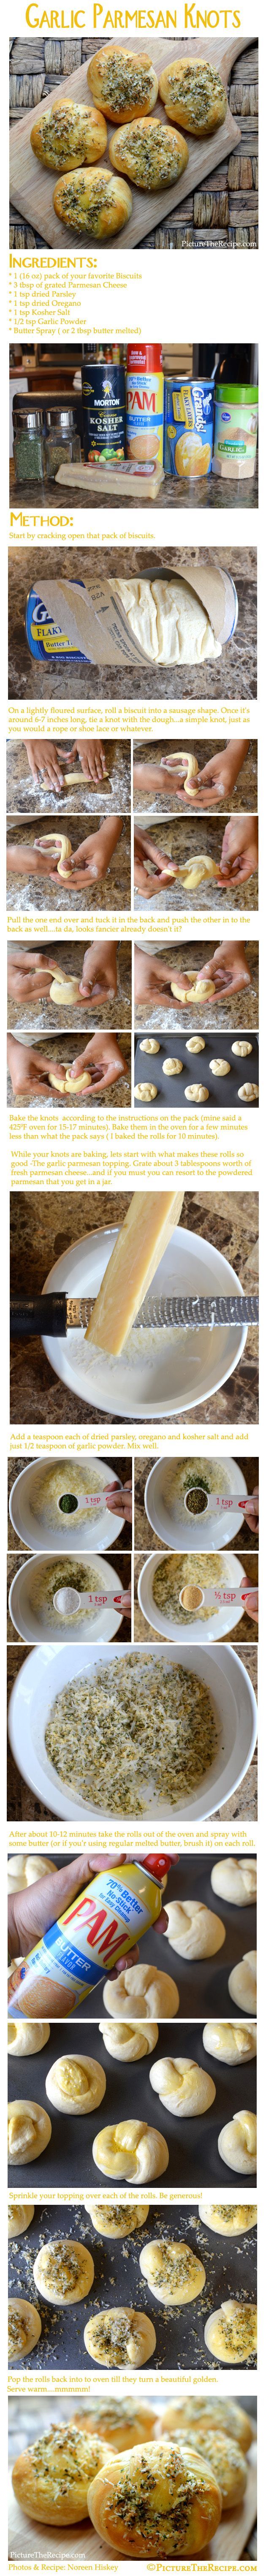 Garlic Parmesan Knots